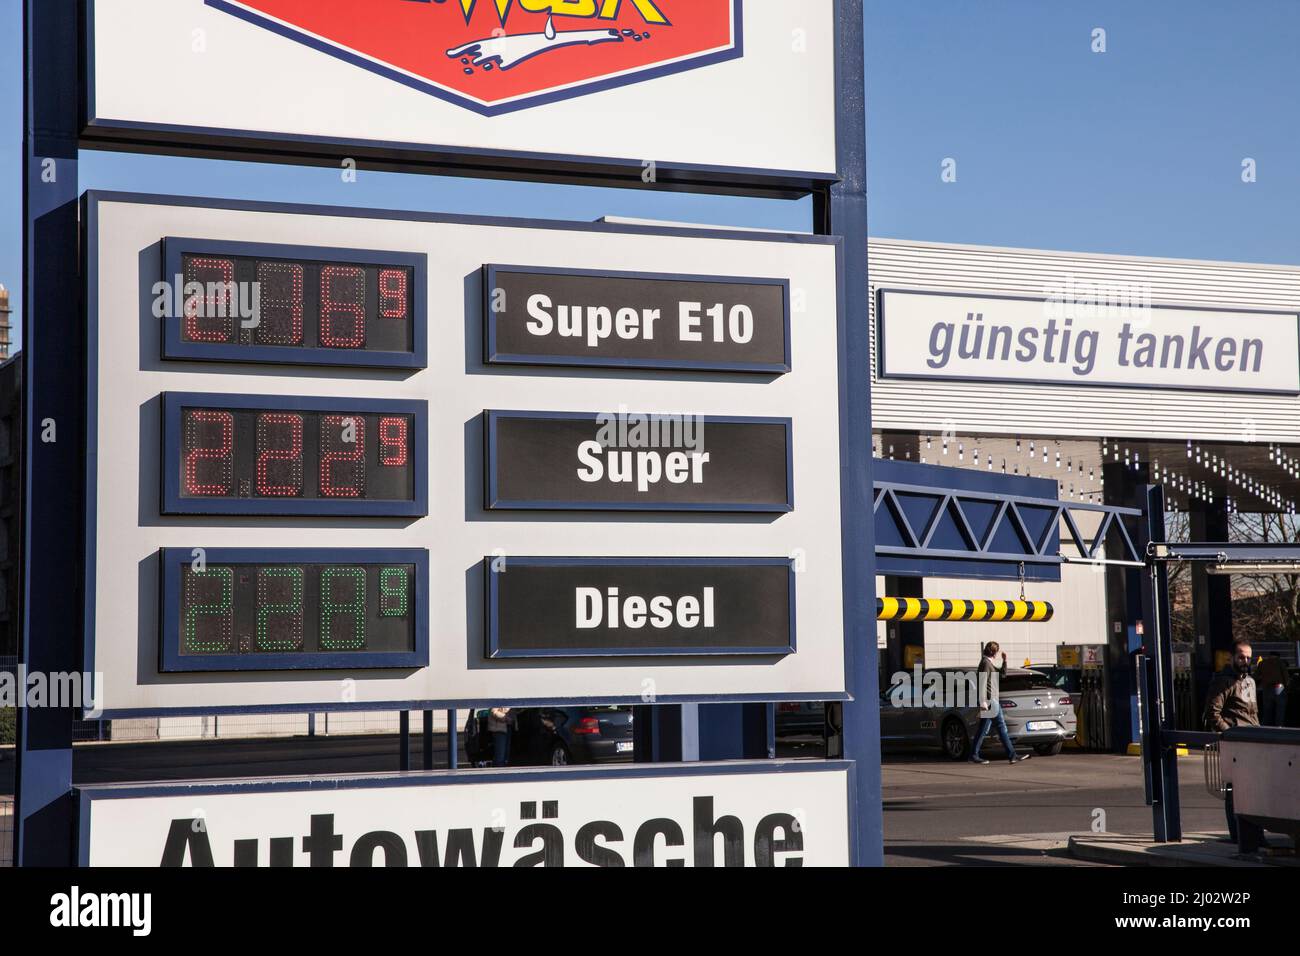 Precios muy altos para gasolina y diesel El 10 de marzo de 2022, Sr. Wash gasolinera y lavado de coches en la calle Raderthalguertel, Colonia, Alemania seh Foto de stock